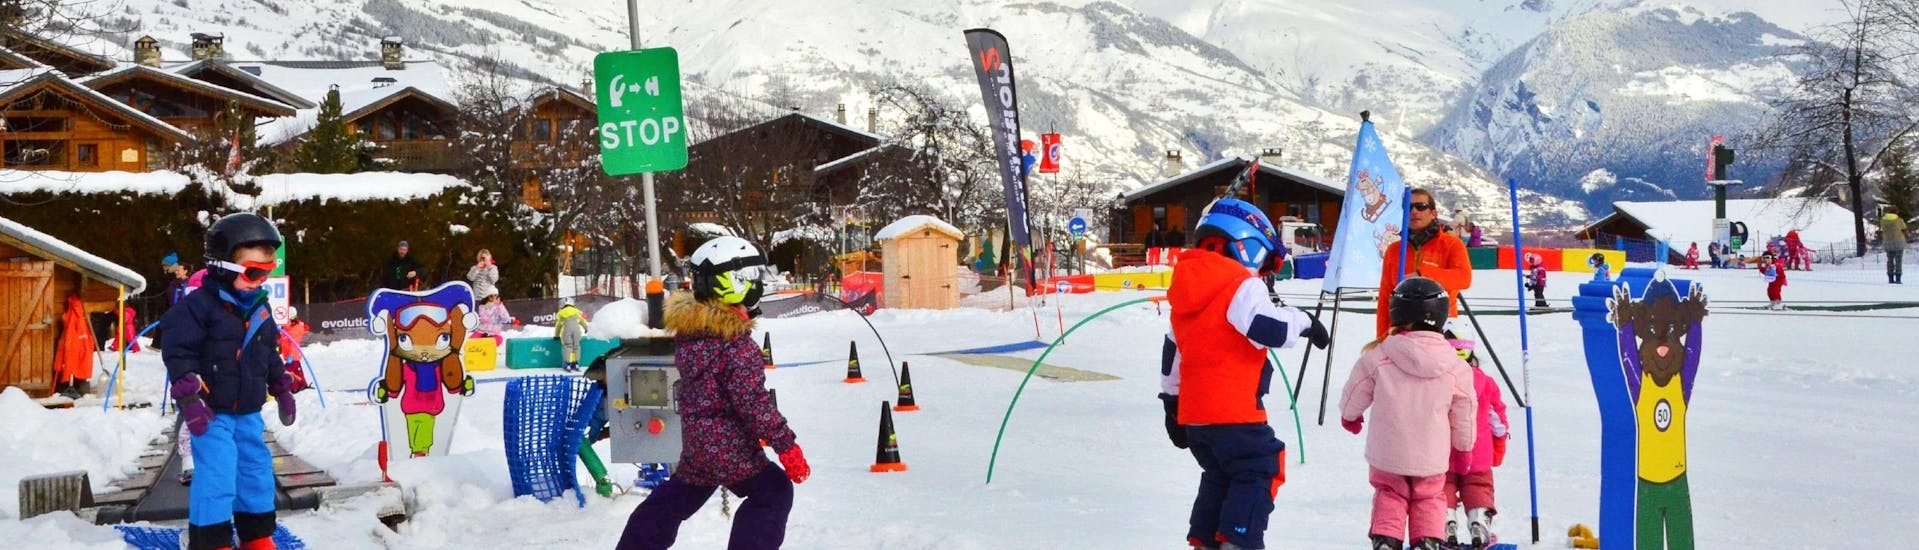 Les enfants apprennent à skier avec des jeux pendant leur Premier Cours de ski Enfants (3-4 ans) avec l'école de ski Evolution 2 La Plagne Montchavin - Les Coches.